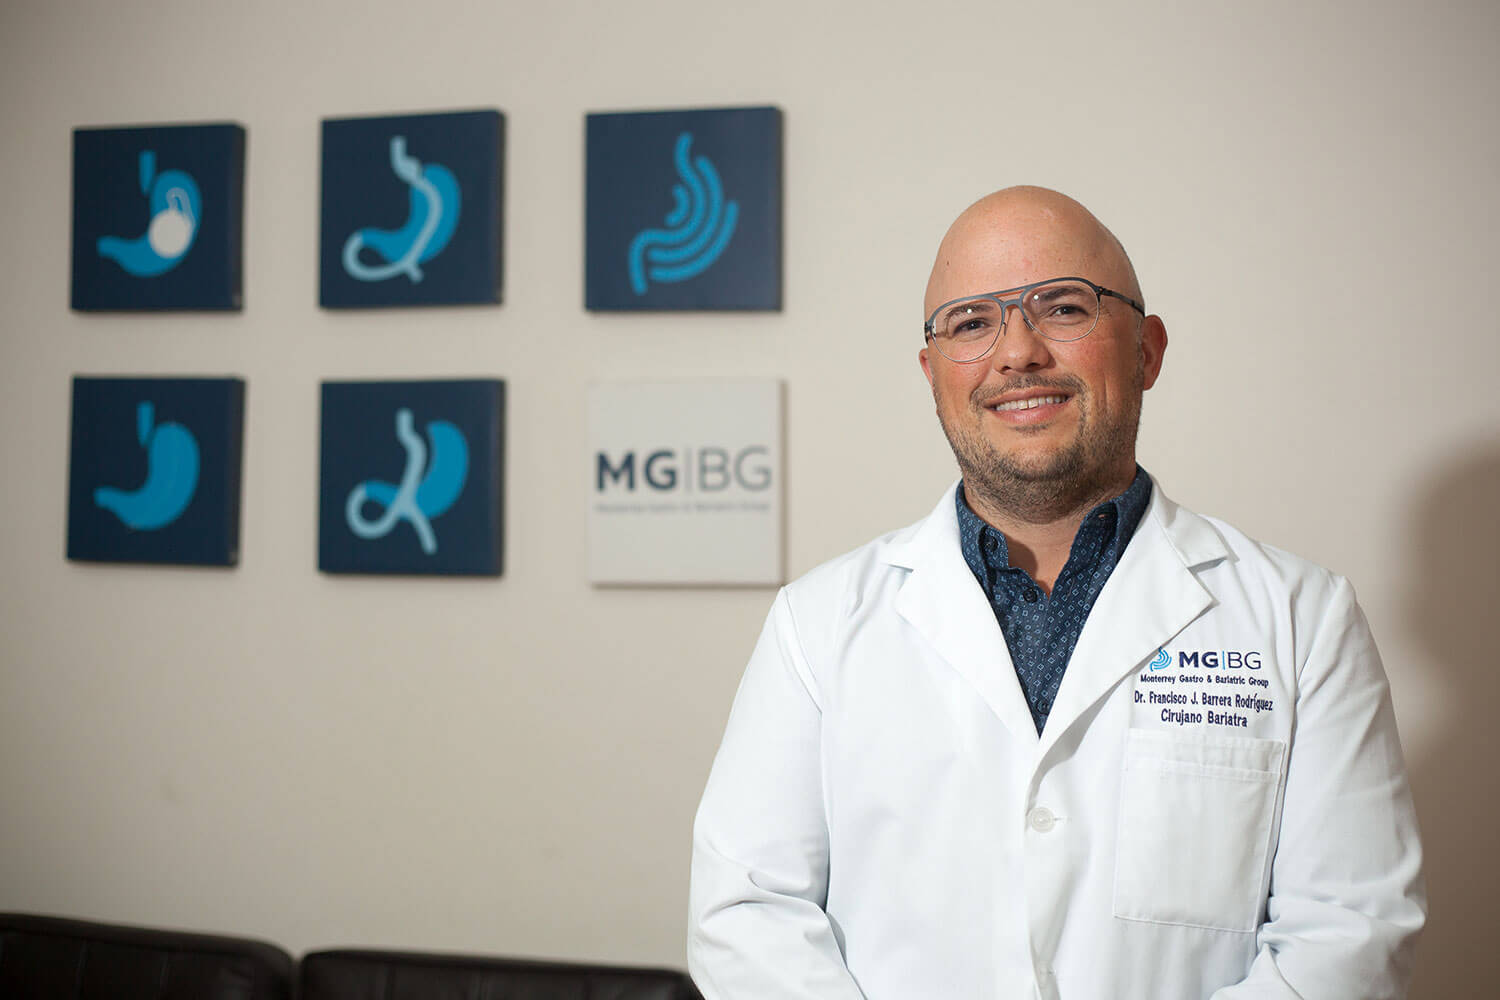 Doctor Francisco J. Barrera Rdz., Bariatra, Cirugía bariátrica, Bariátrica, Médico bariatra, Bariatras en Monterrey